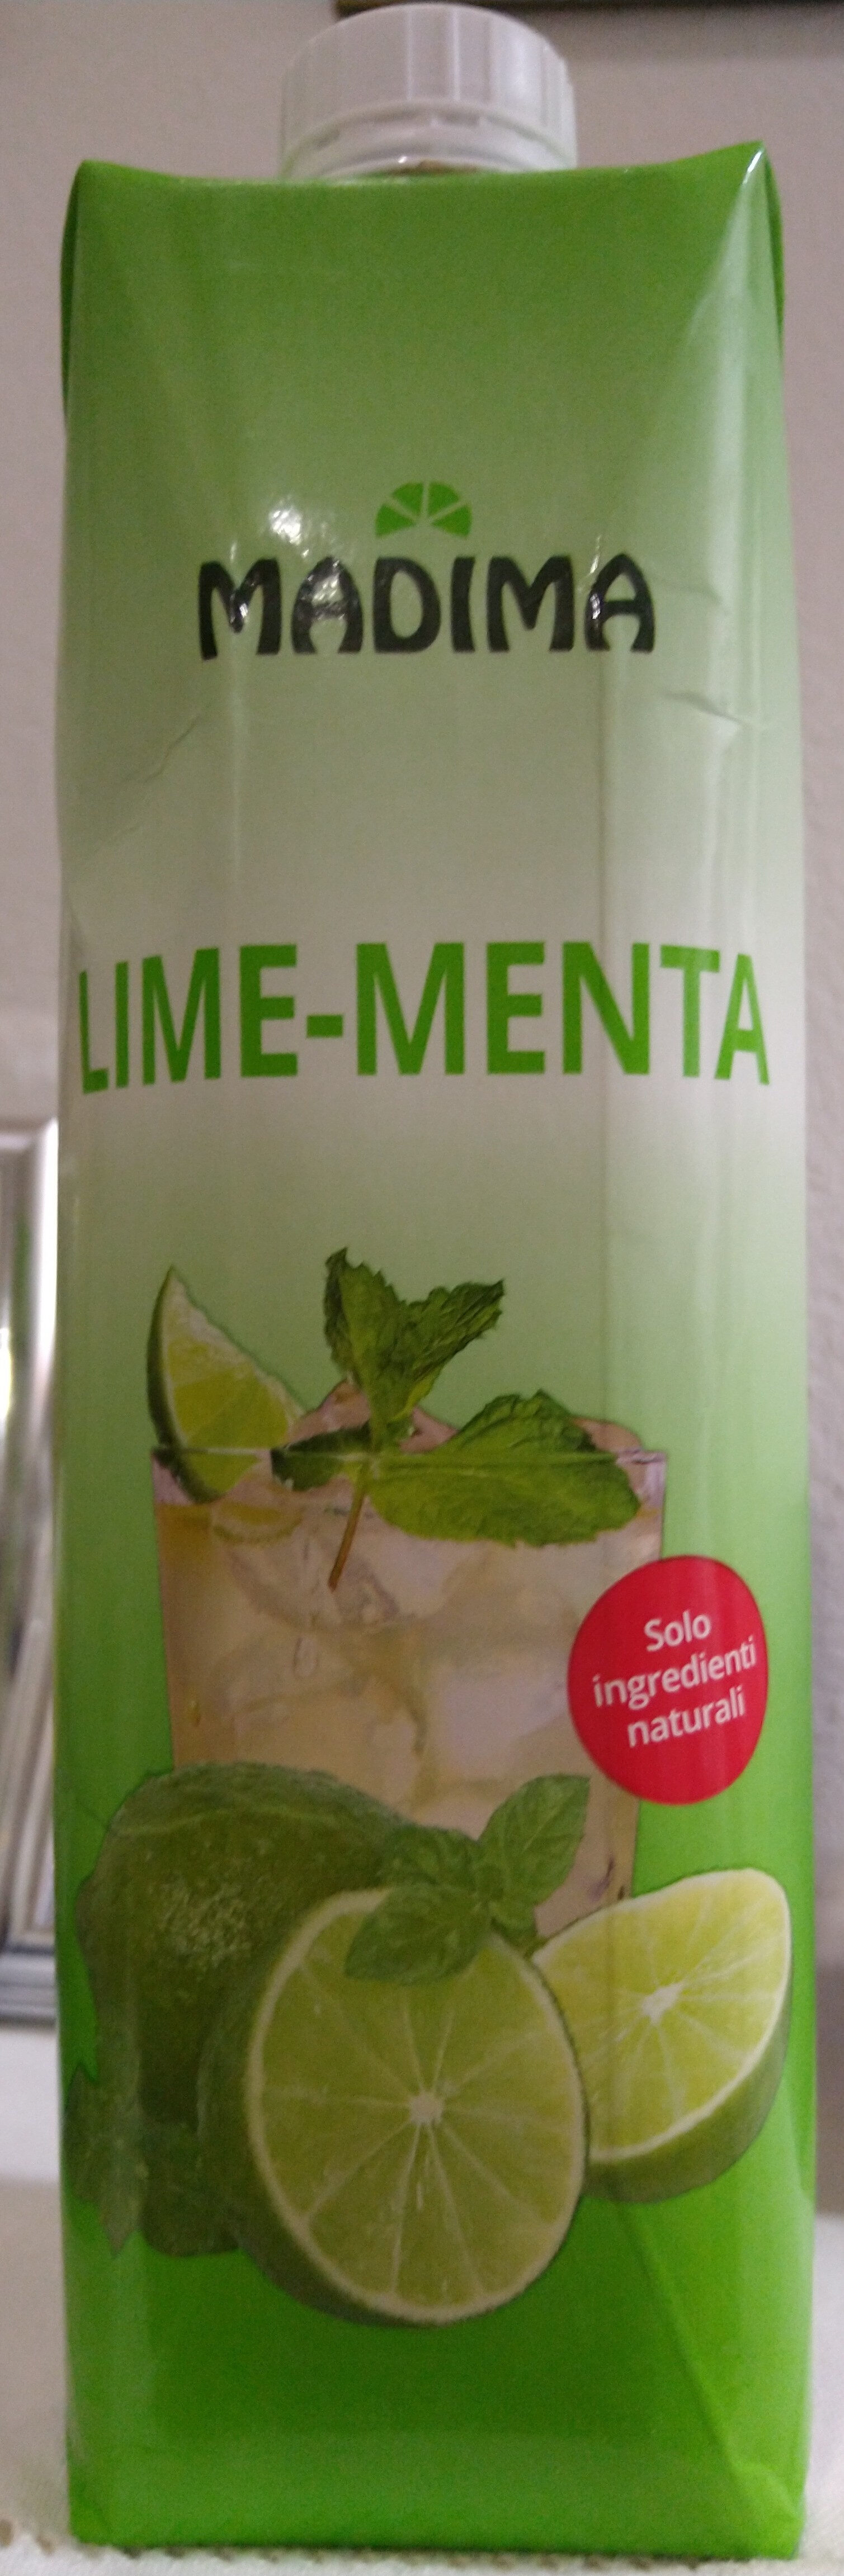 Lime-Menta - Prodotto